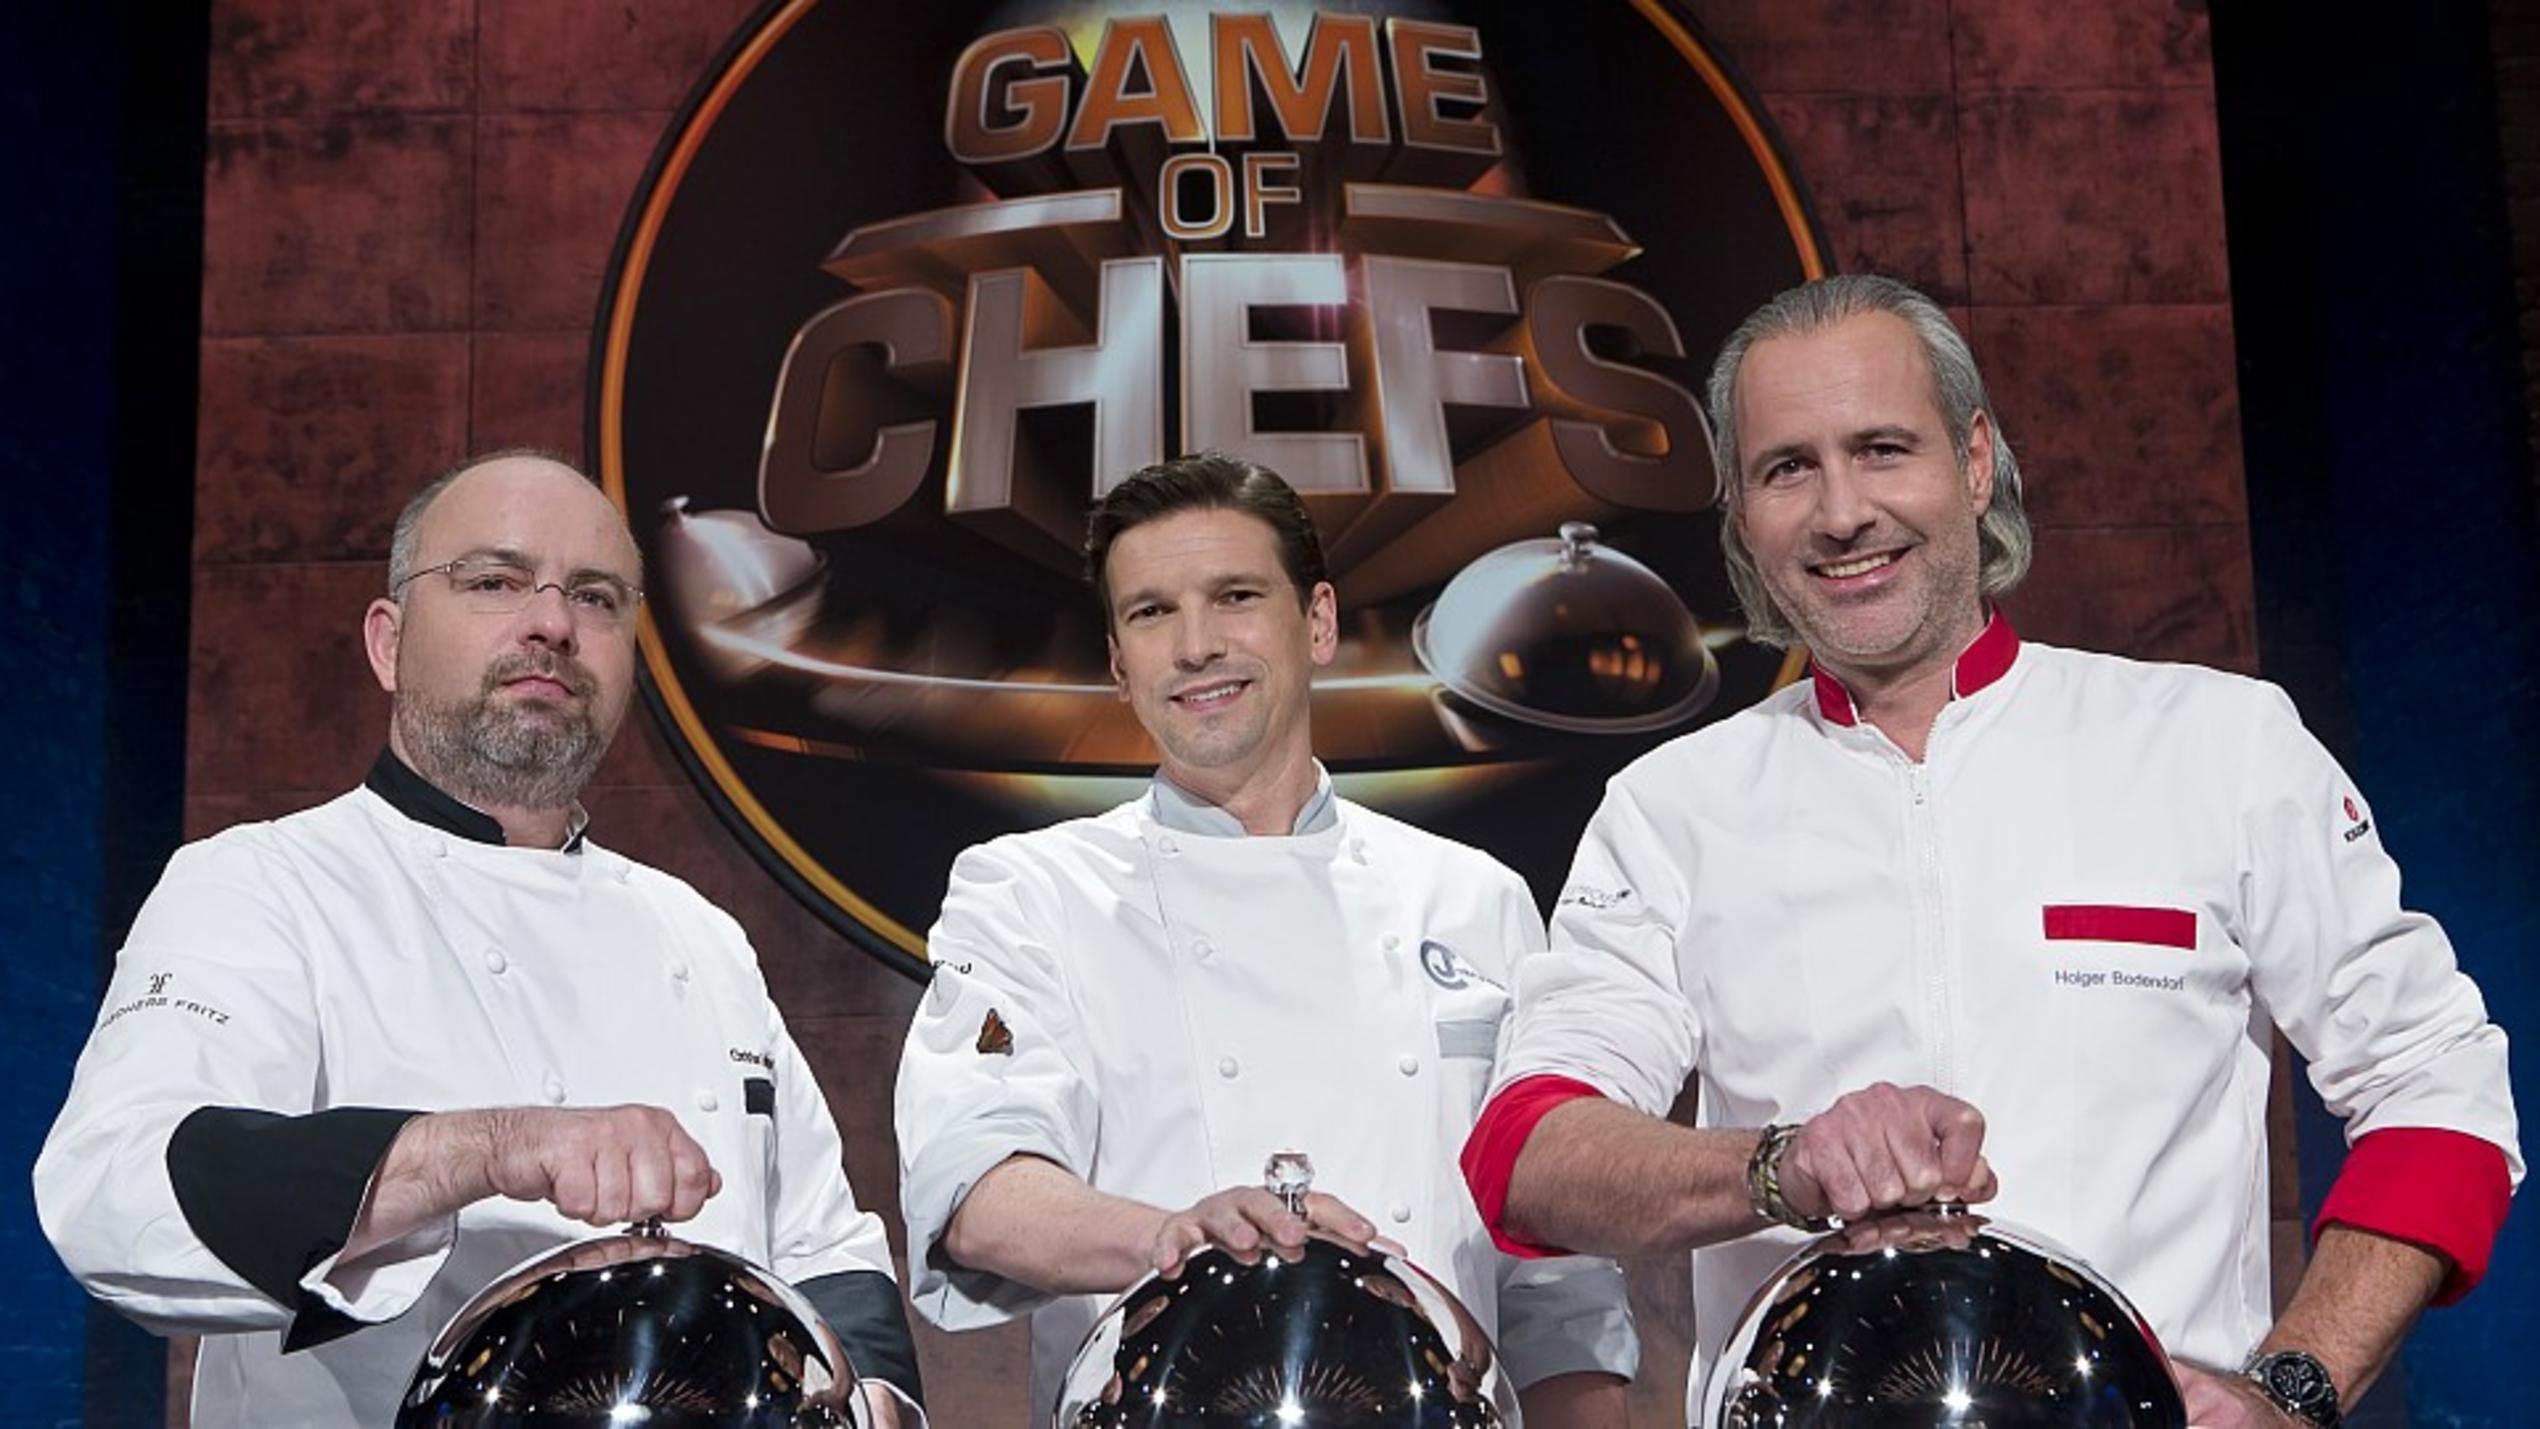 Die drei Sterneköche bei "Game of Chefs": Christian Lohse, Christian Jürgens und Holger Bodendorf.